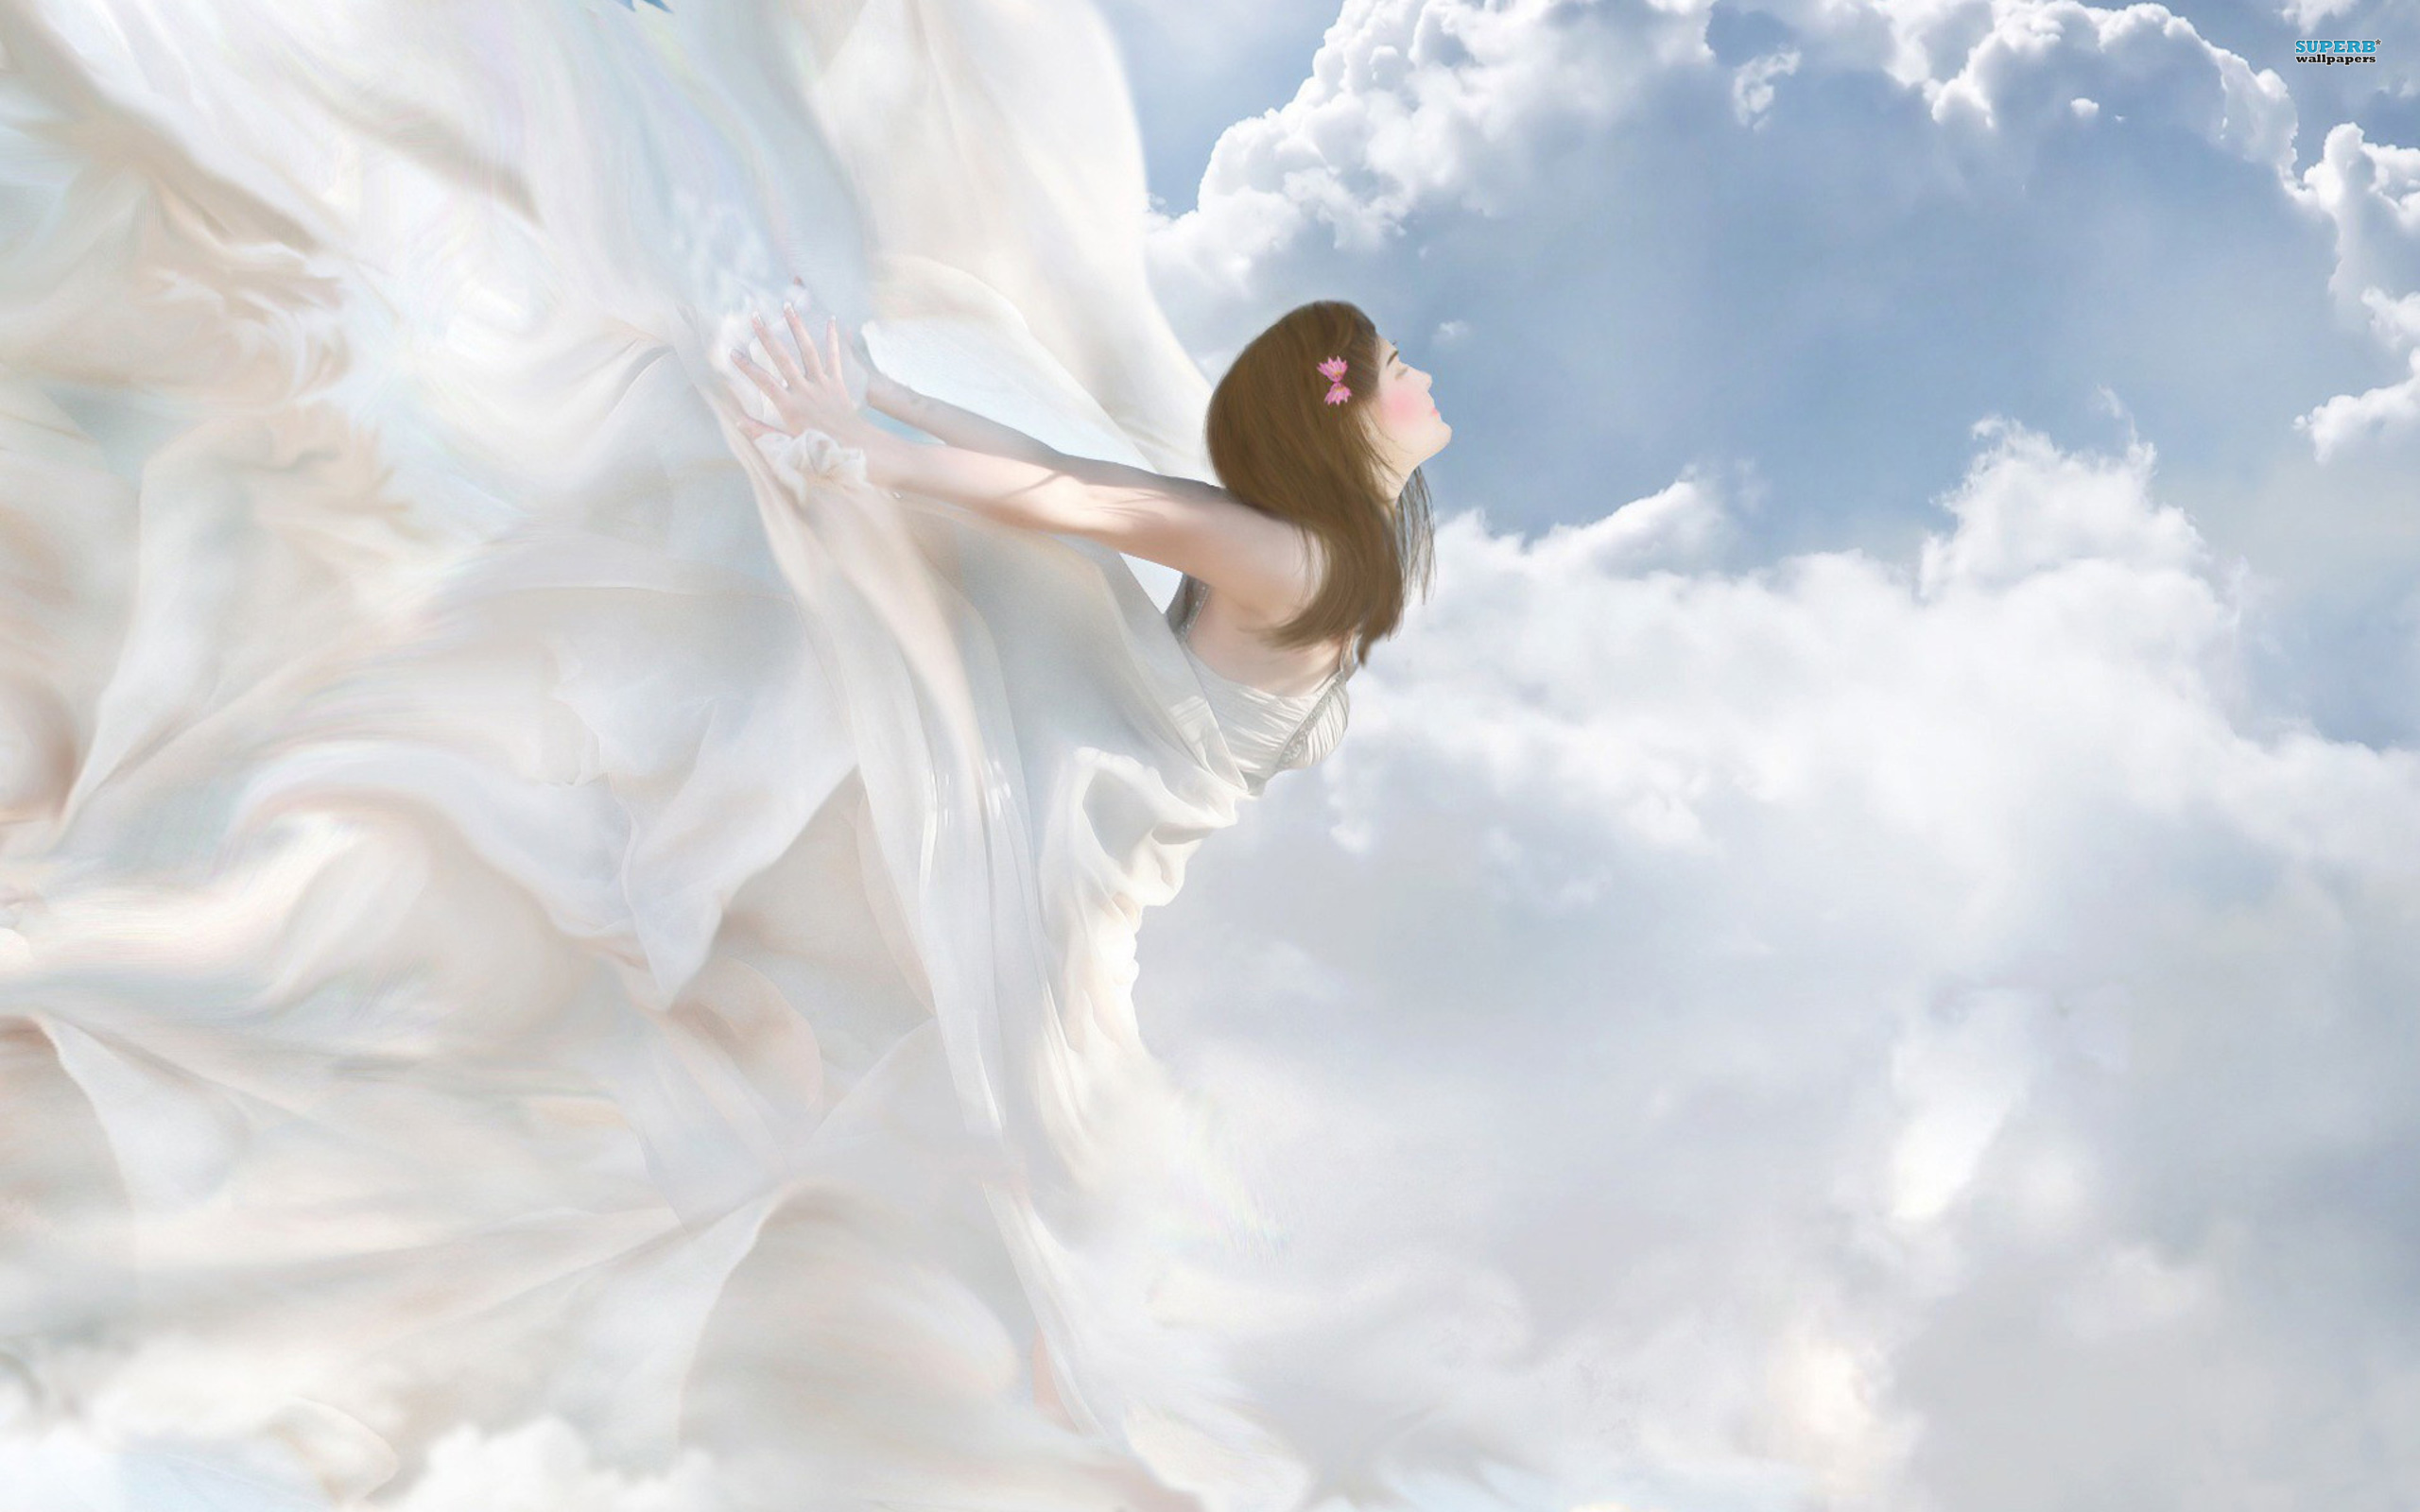 Улетаем в небеса песня слушать. Женщина с крыльями. Девушка в облаках. Небесные ангелы. Девушка с крыльями в полете.